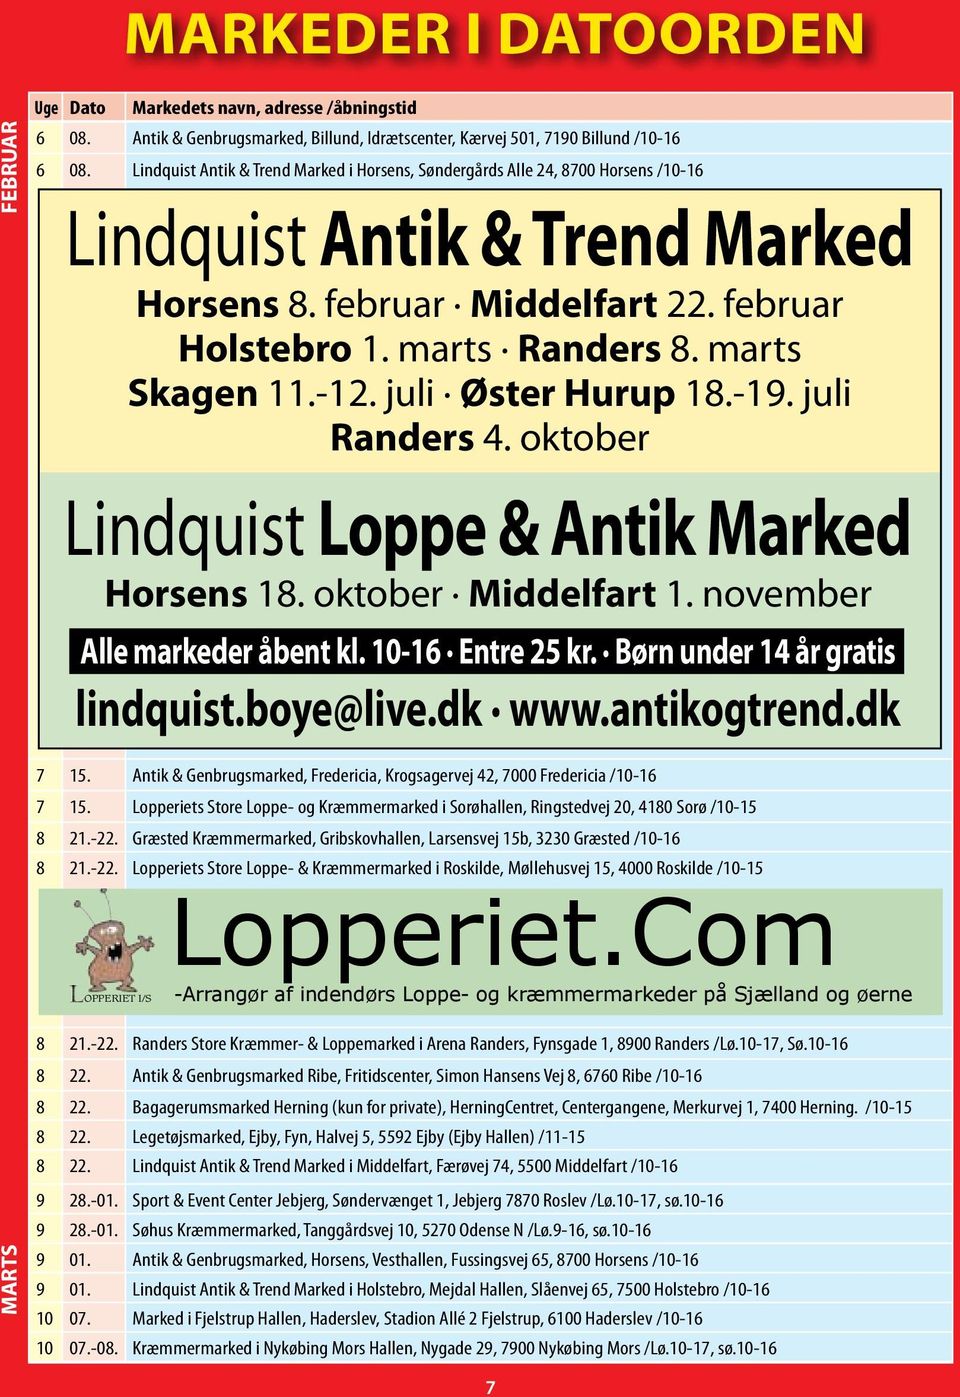 marts Skagen 11.-12. juli Øster Hurup 18.-19. juli Randers 4. oktober Lindquist Loppe & Antik Marked Horsens 18. oktober Middelfart 1. november Alle markeder åbent kl. 10-16 Entre 25 kr.